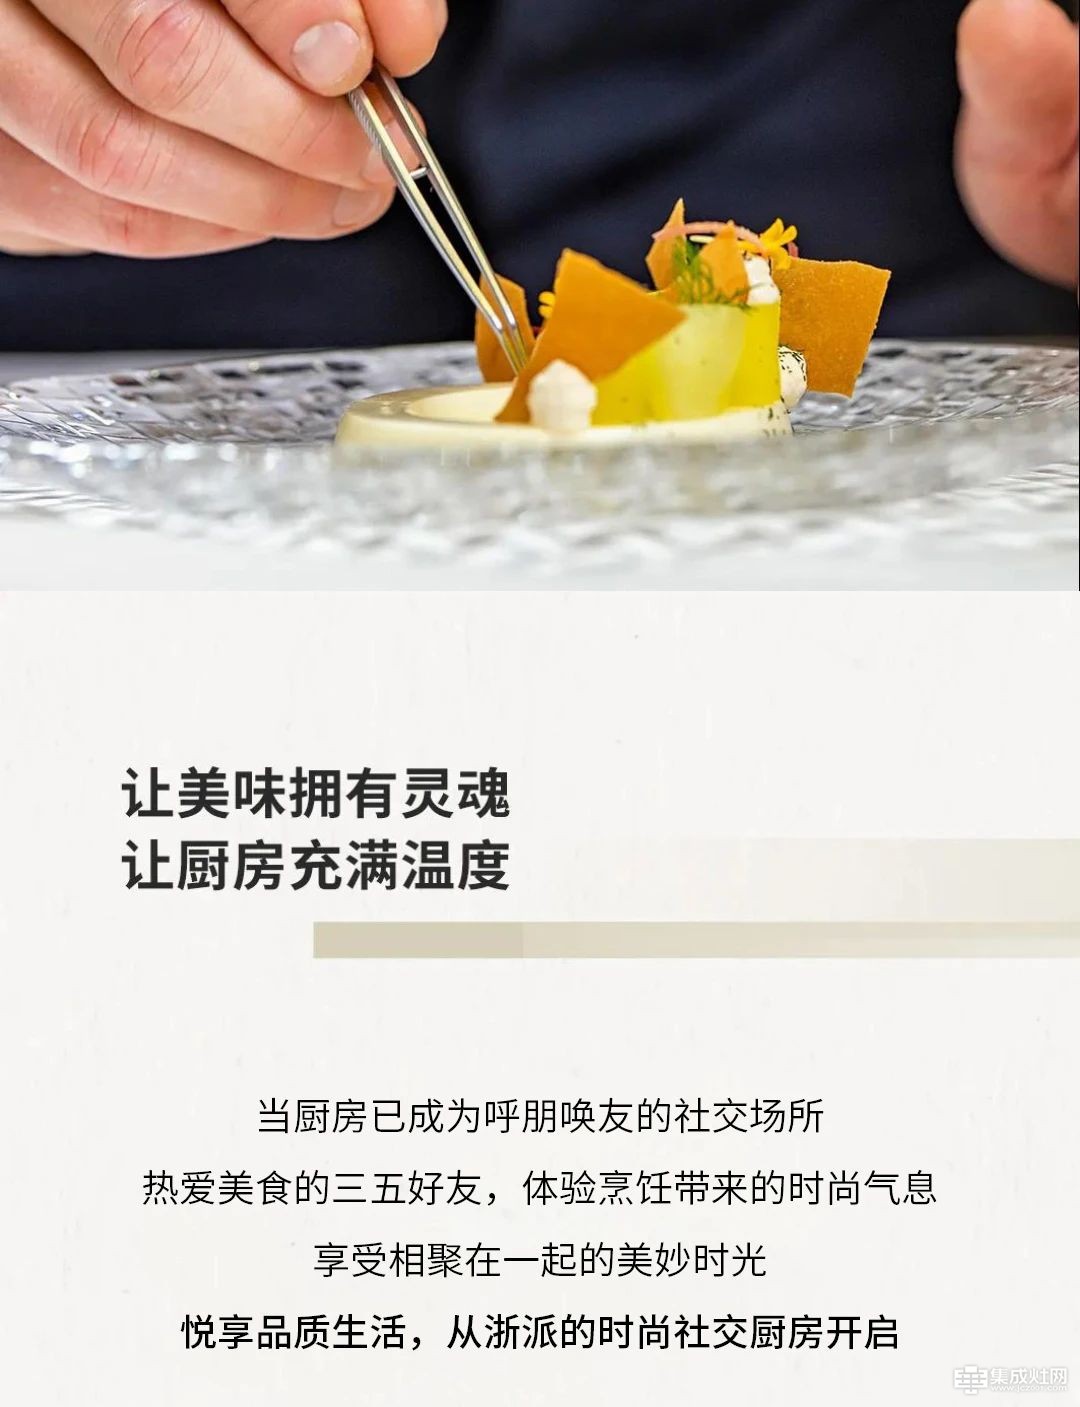 浙派现代系列 “食”尚厨房 悦享烹饪